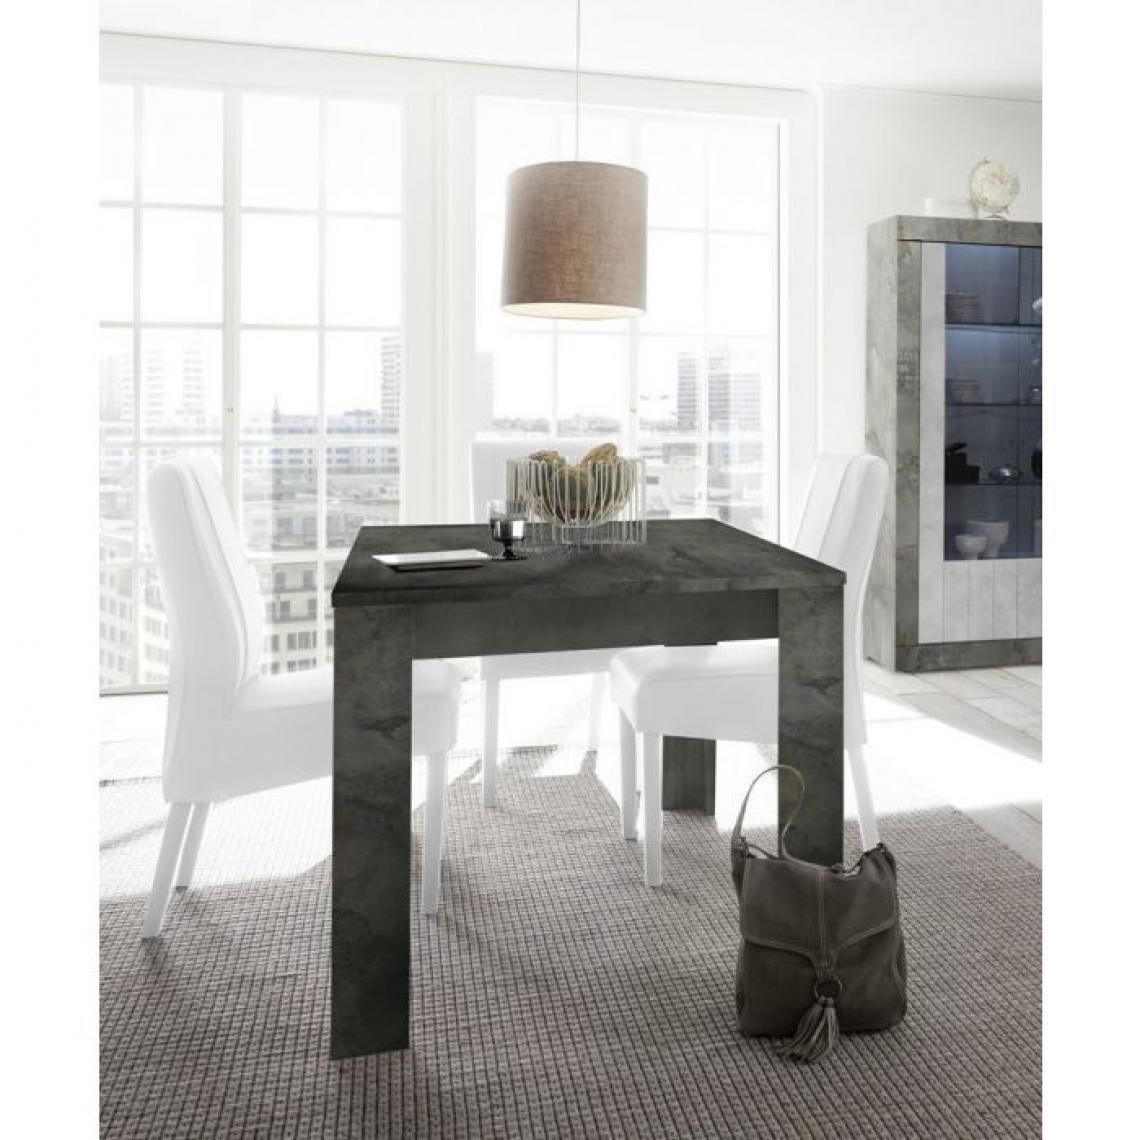 Alter - Table à manger extensible, couleur gris béton, Dimensions 137 x 79 x 90 cm (jusqu'à 185 cm avec la rallonge) - Tables à manger